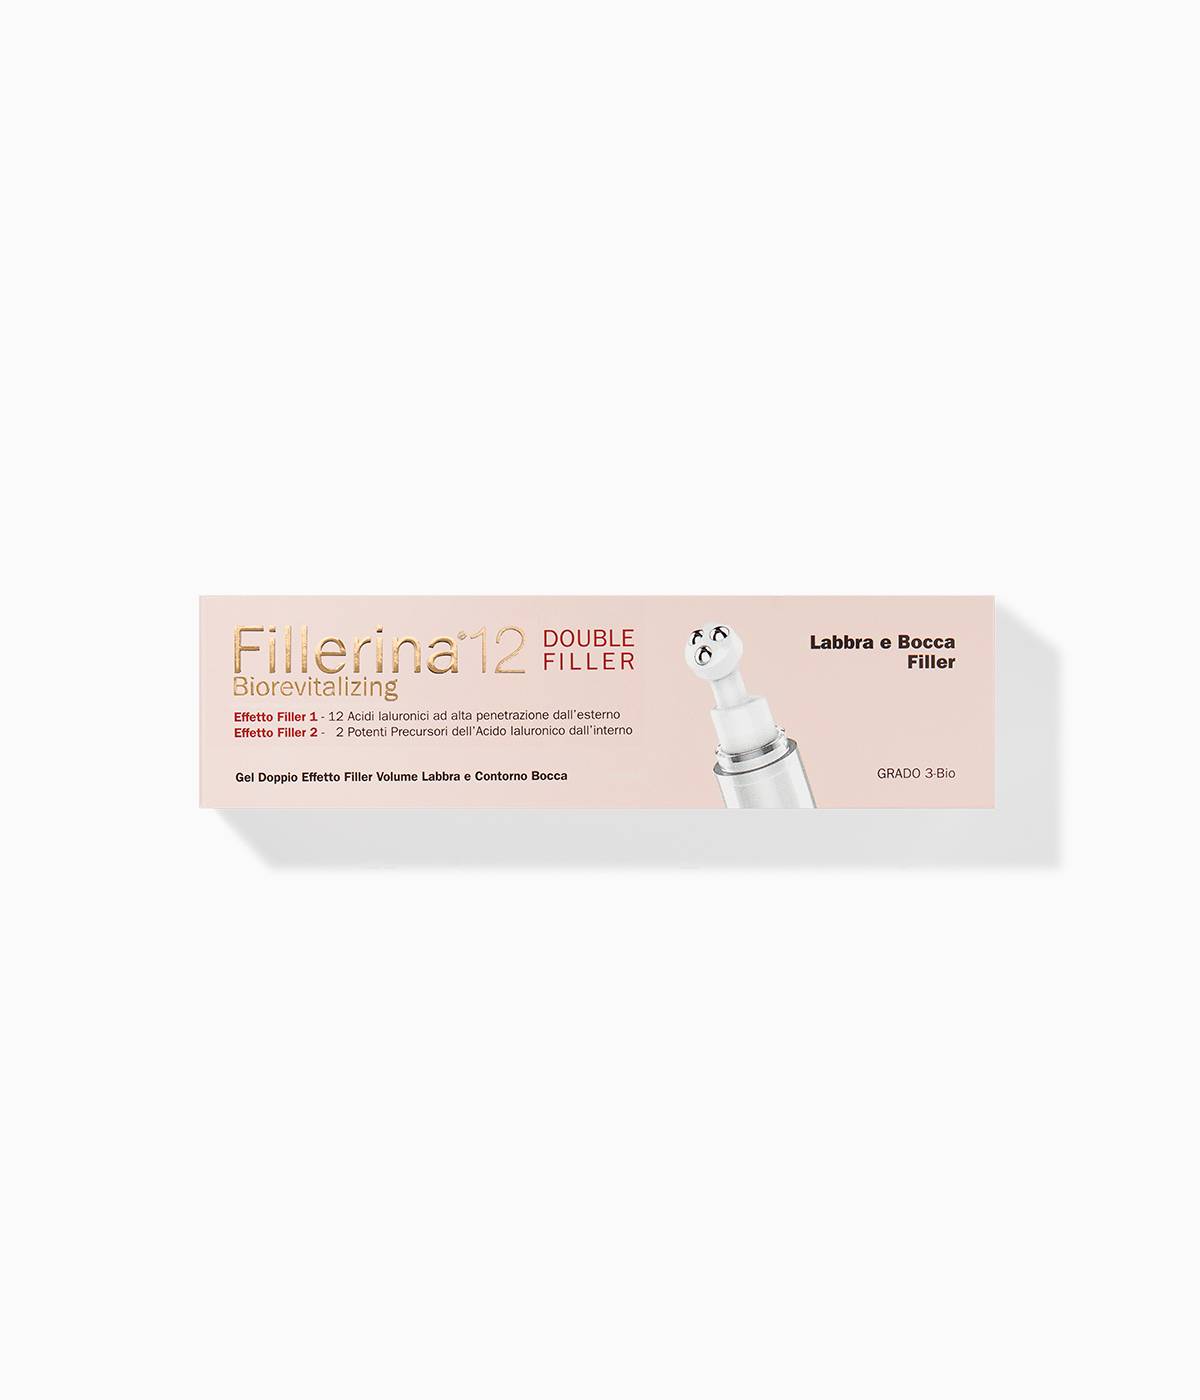 Labo-fillerina-double-filler-biorevitalizing-gel-lip-mouth-antiwrinkle-pharmaflorence